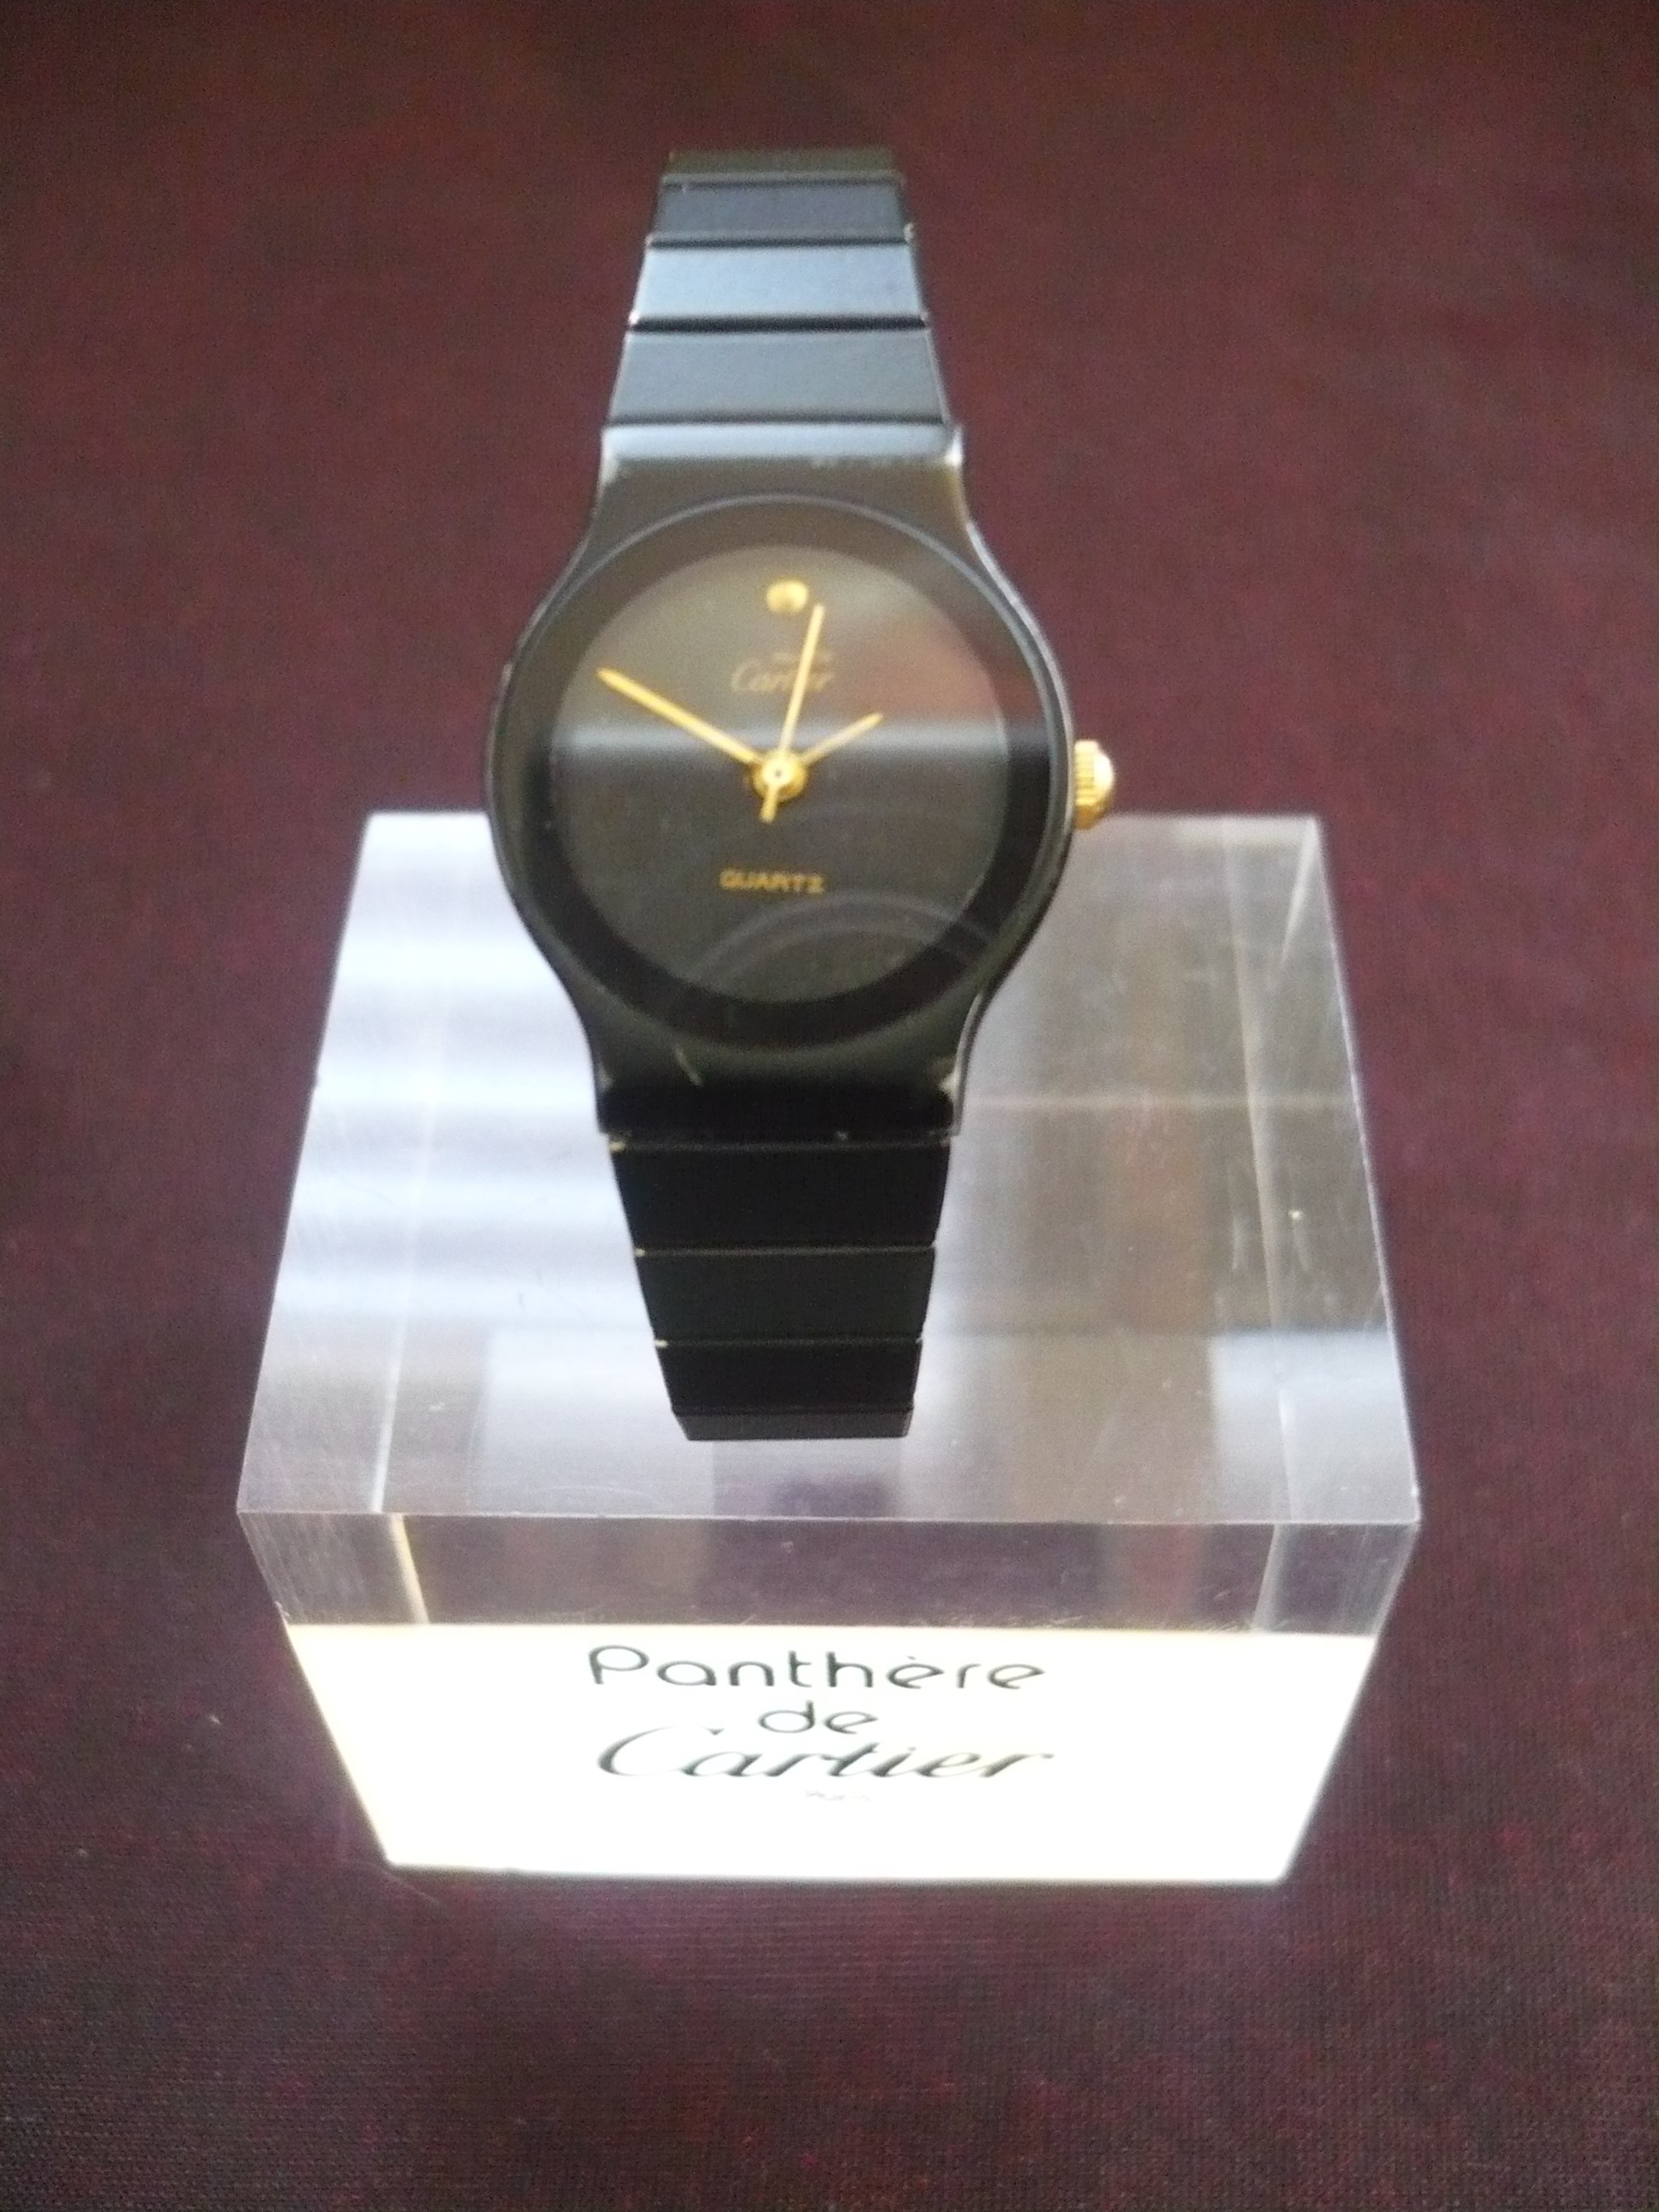 Pathére de Cartier horloge met standaard